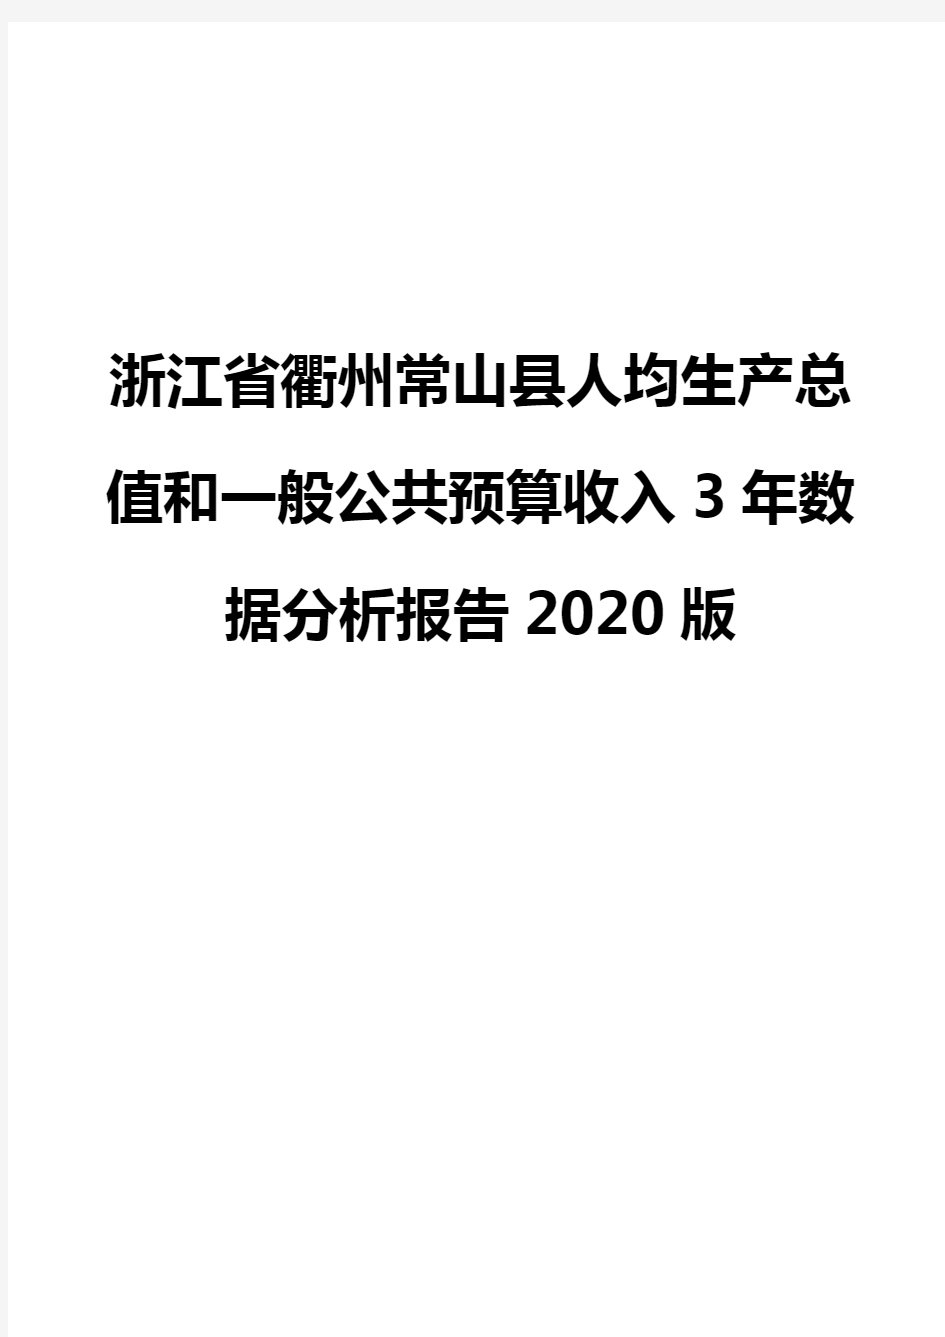 浙江省衢州常山县人均生产总值和一般公共预算收入3年数据分析报告2020版